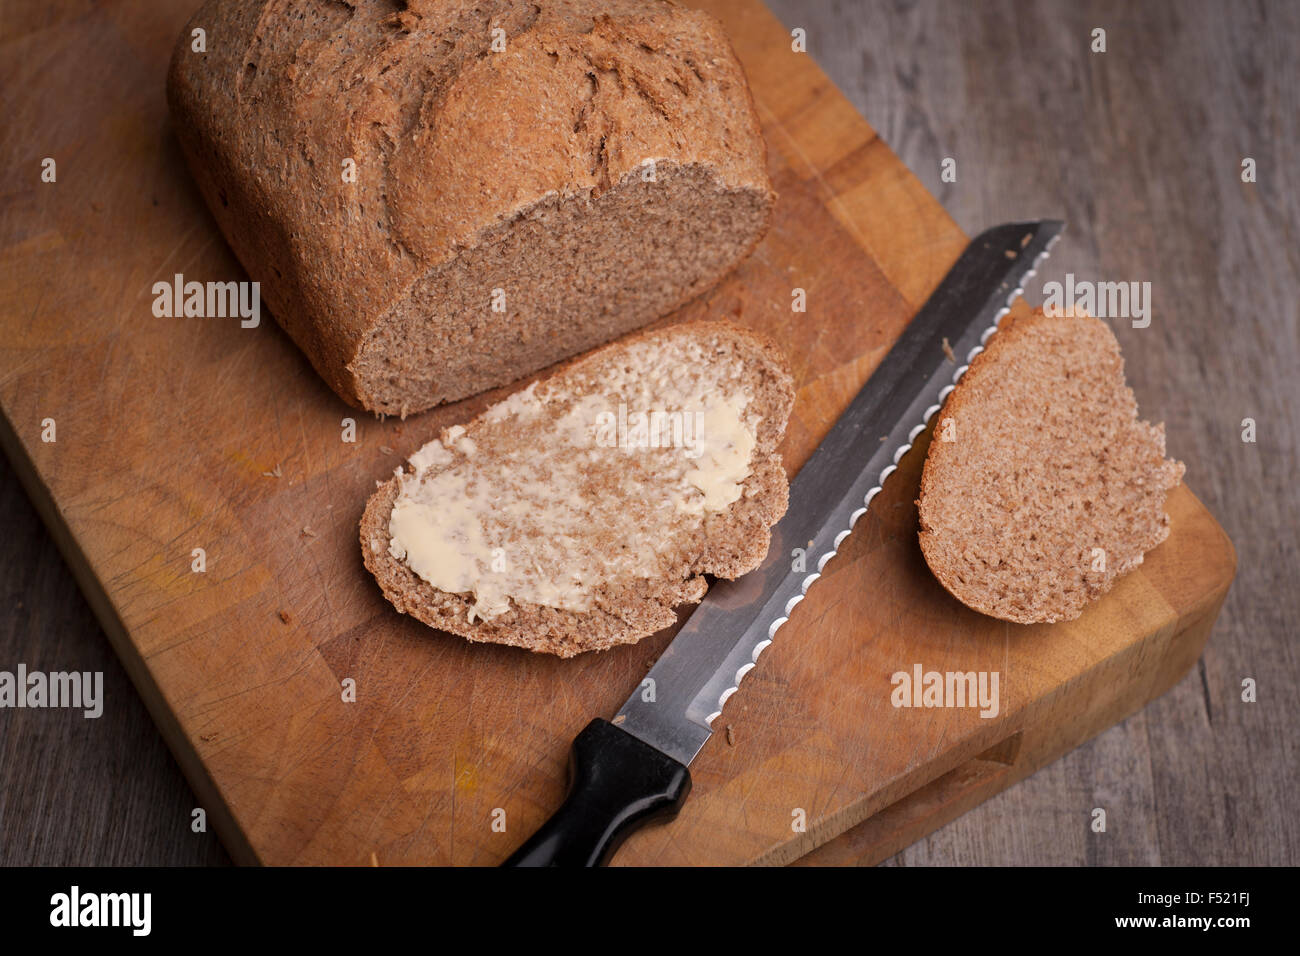 Pane appena sfornato pagnotta di pane con una fetta imburrata Foto Stock